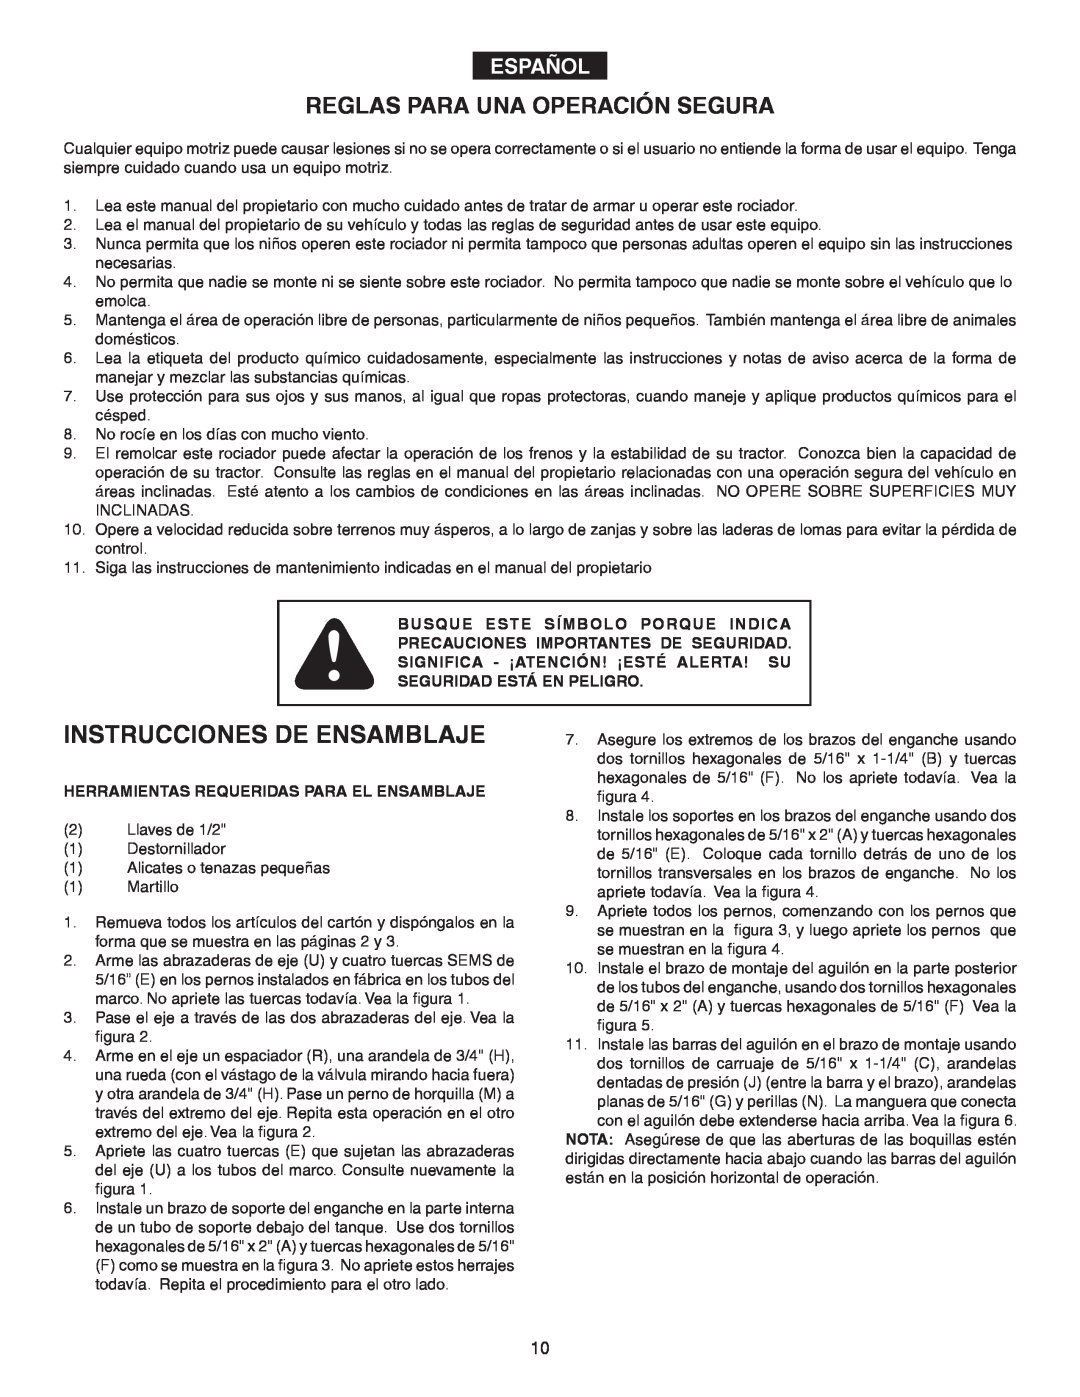 Agri-Fab 45-02932 owner manual Instrucciones De Ensamblaje, Reglas Para Una Operación Segura, Español 